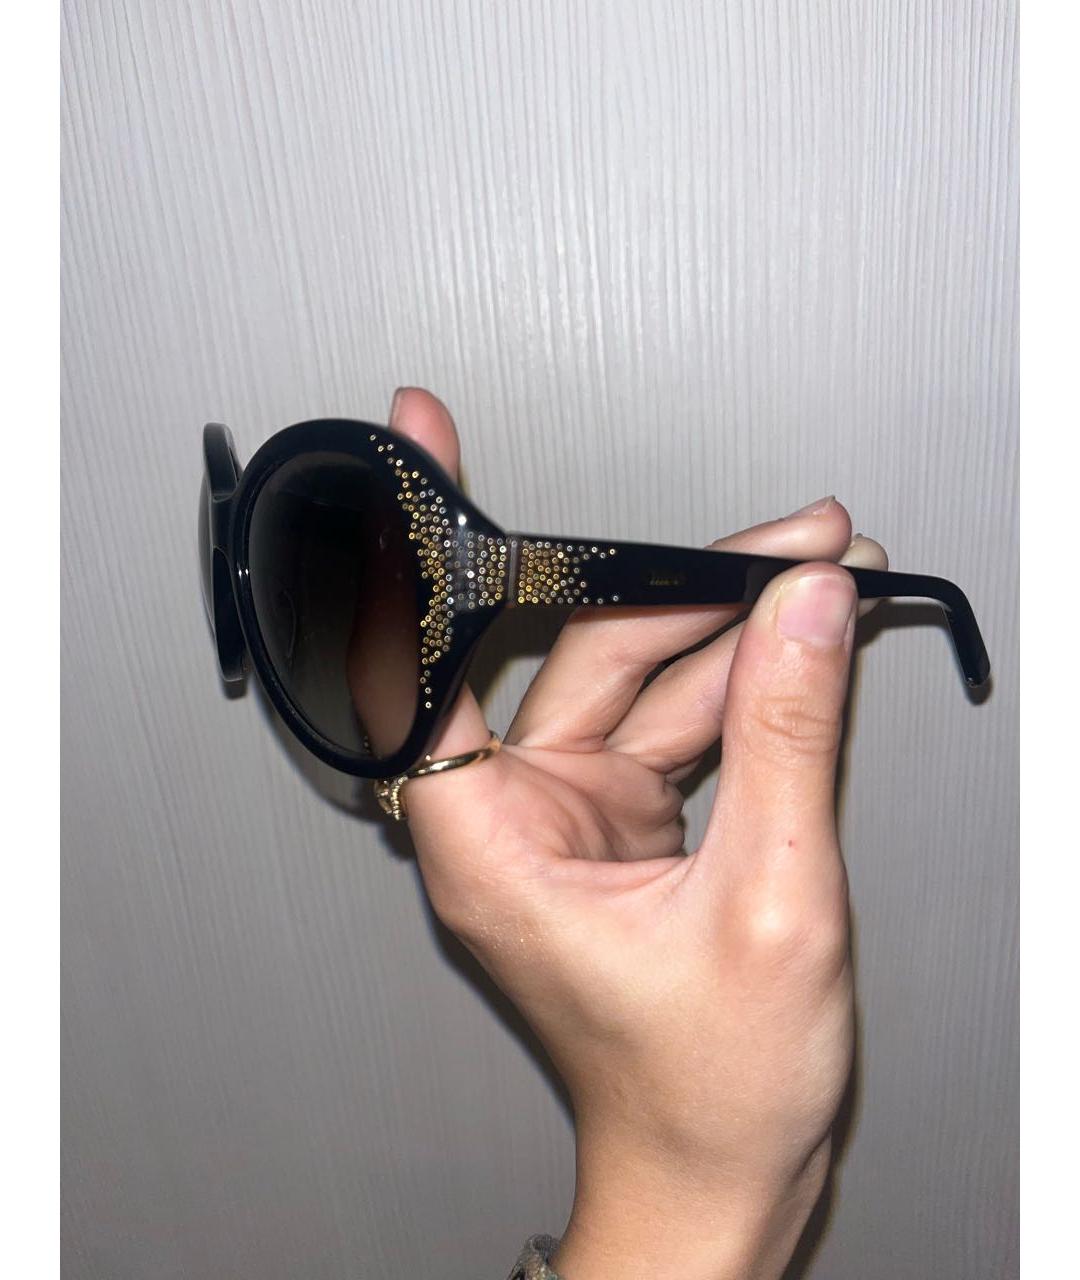 CHLOE Черные пластиковые солнцезащитные очки, фото 3